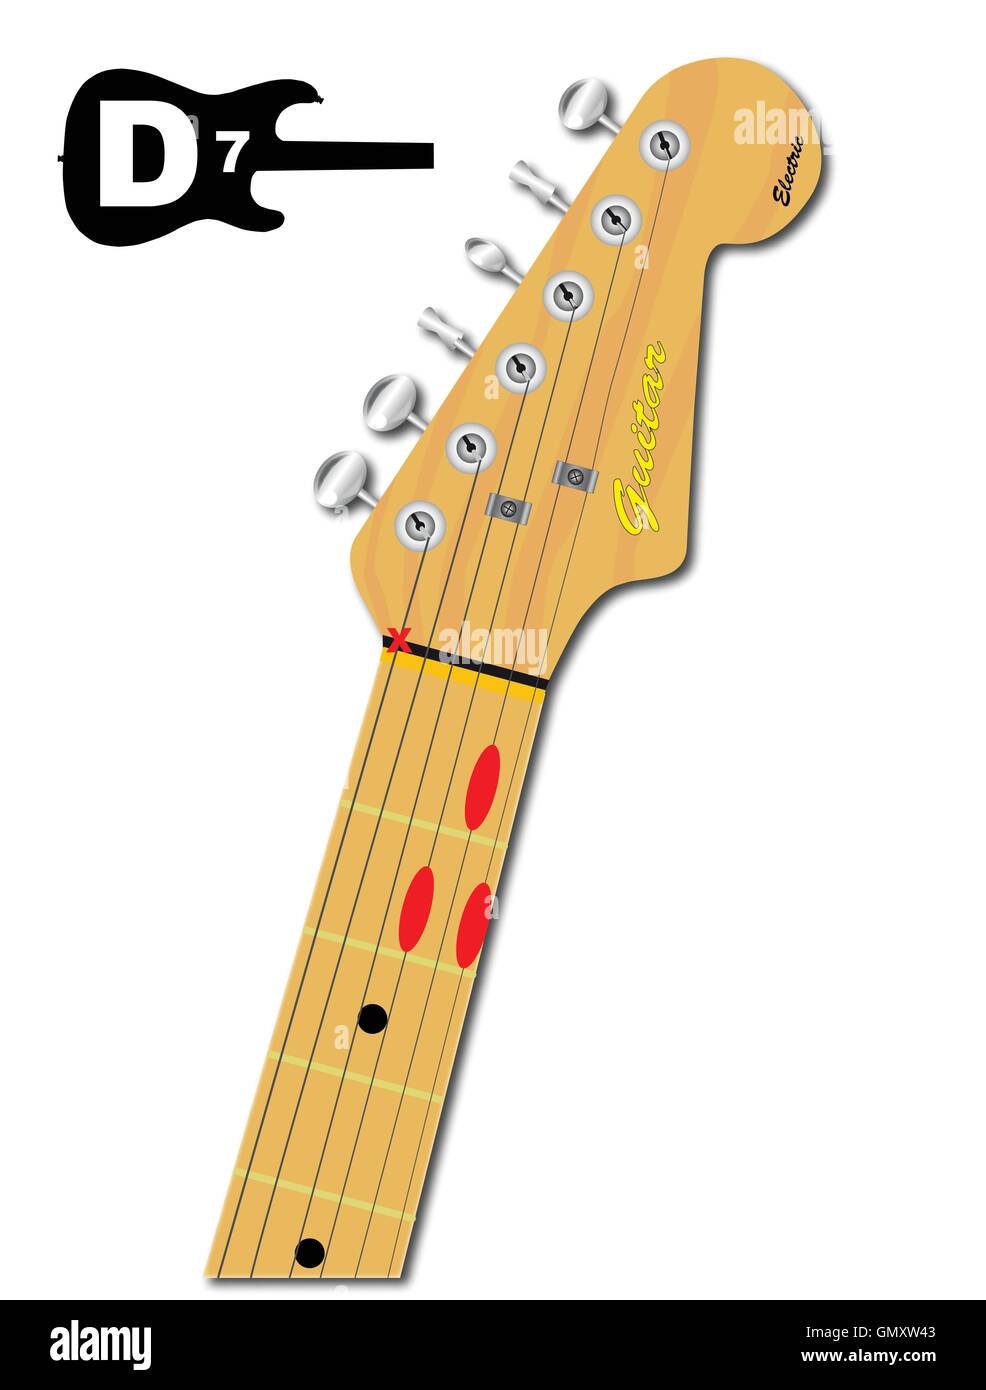 Il Guitar Chord di D 7 Illustrazione Vettoriale